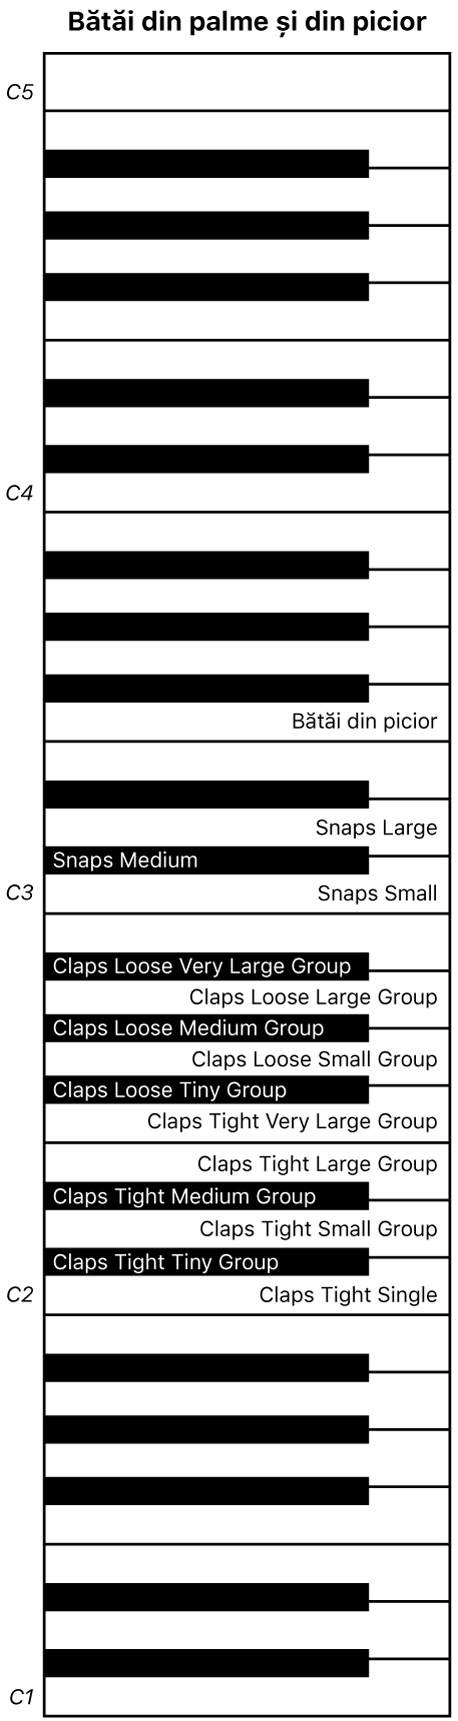 Figură. Harta claviaturii pentru interpretarea Claps and Snaps.